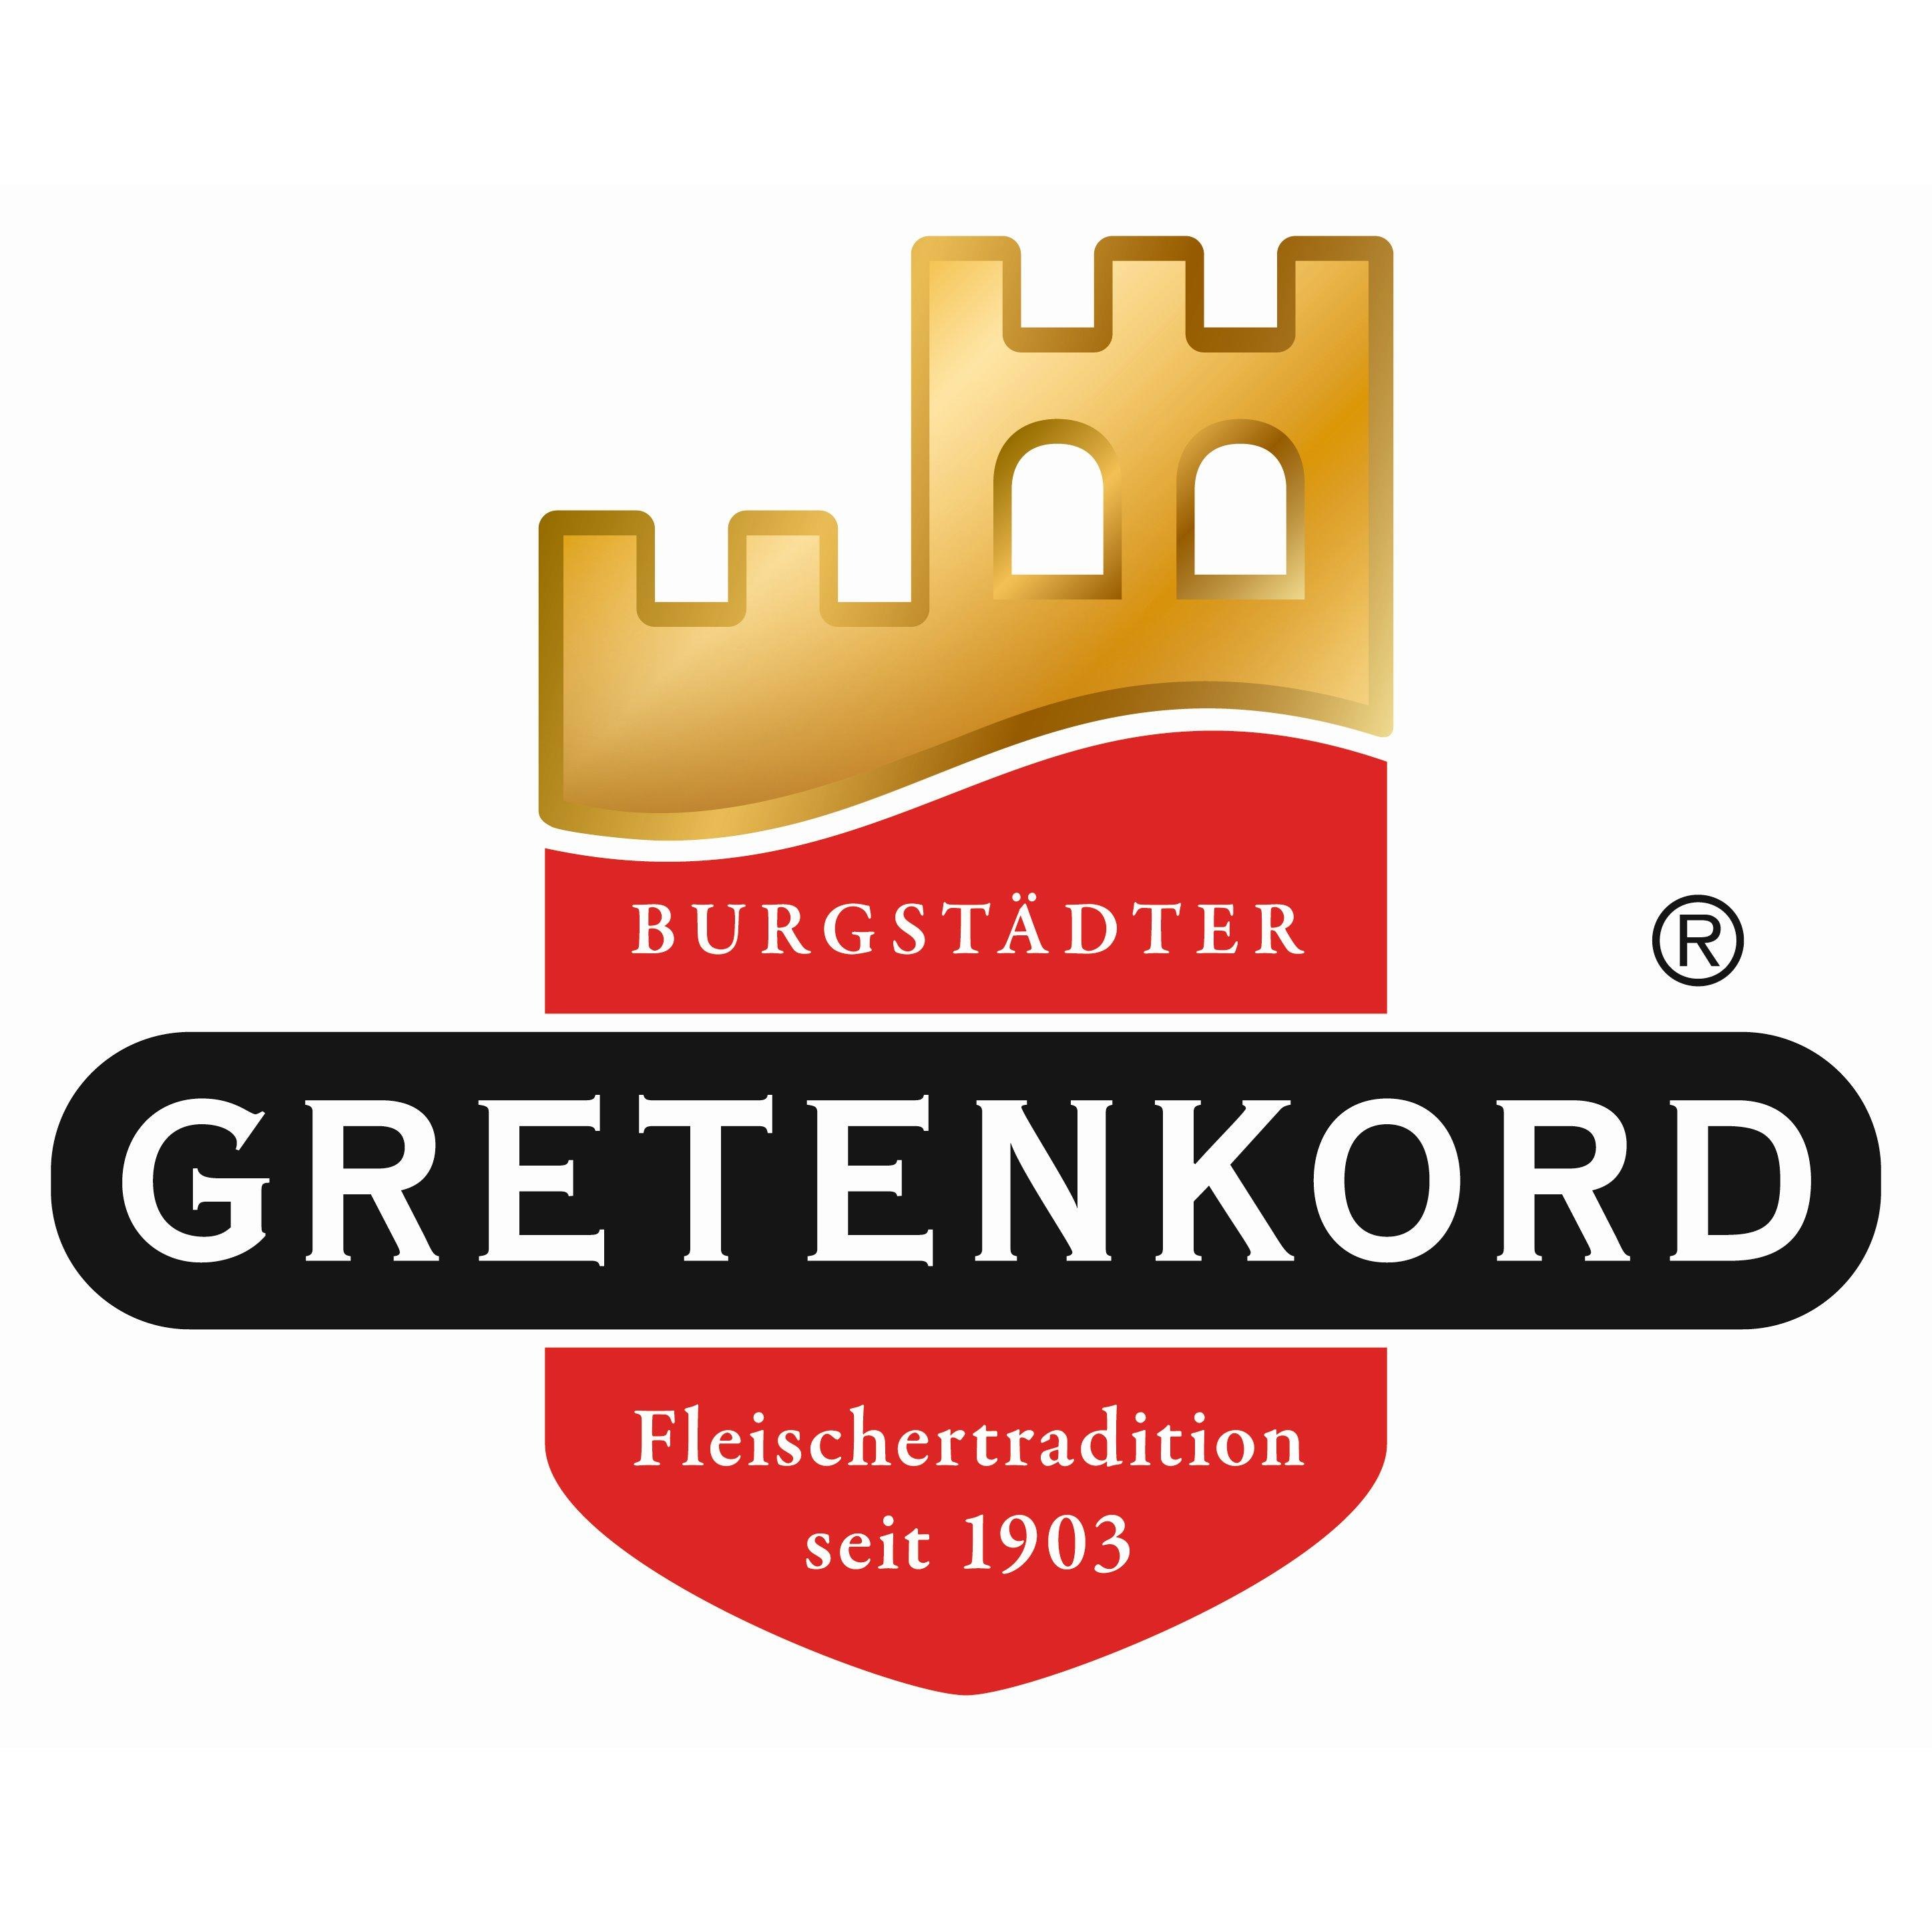 Fleischerei Gretenkord in Dresden - Logo